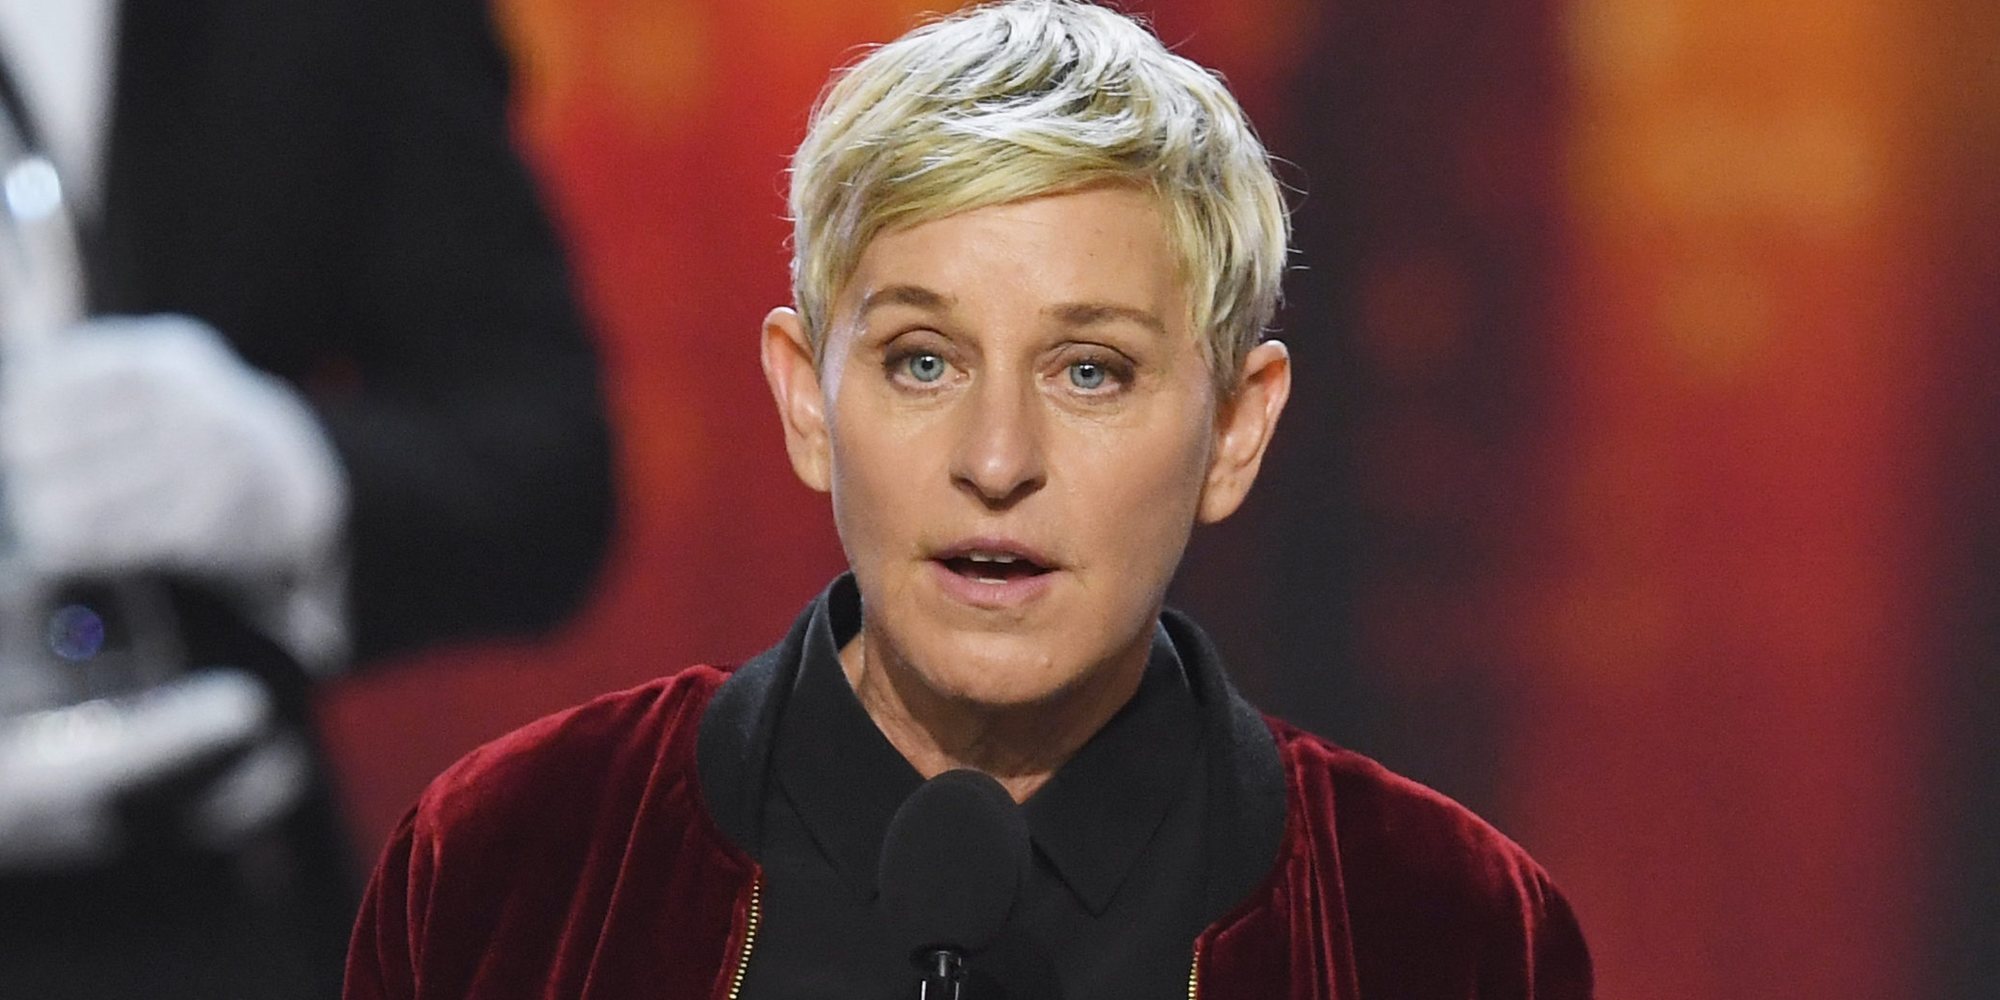 Ellen DeGeneres se reúne con su equipo y pide disculpas tras su polémico comportamiento: "No soy perfecta"